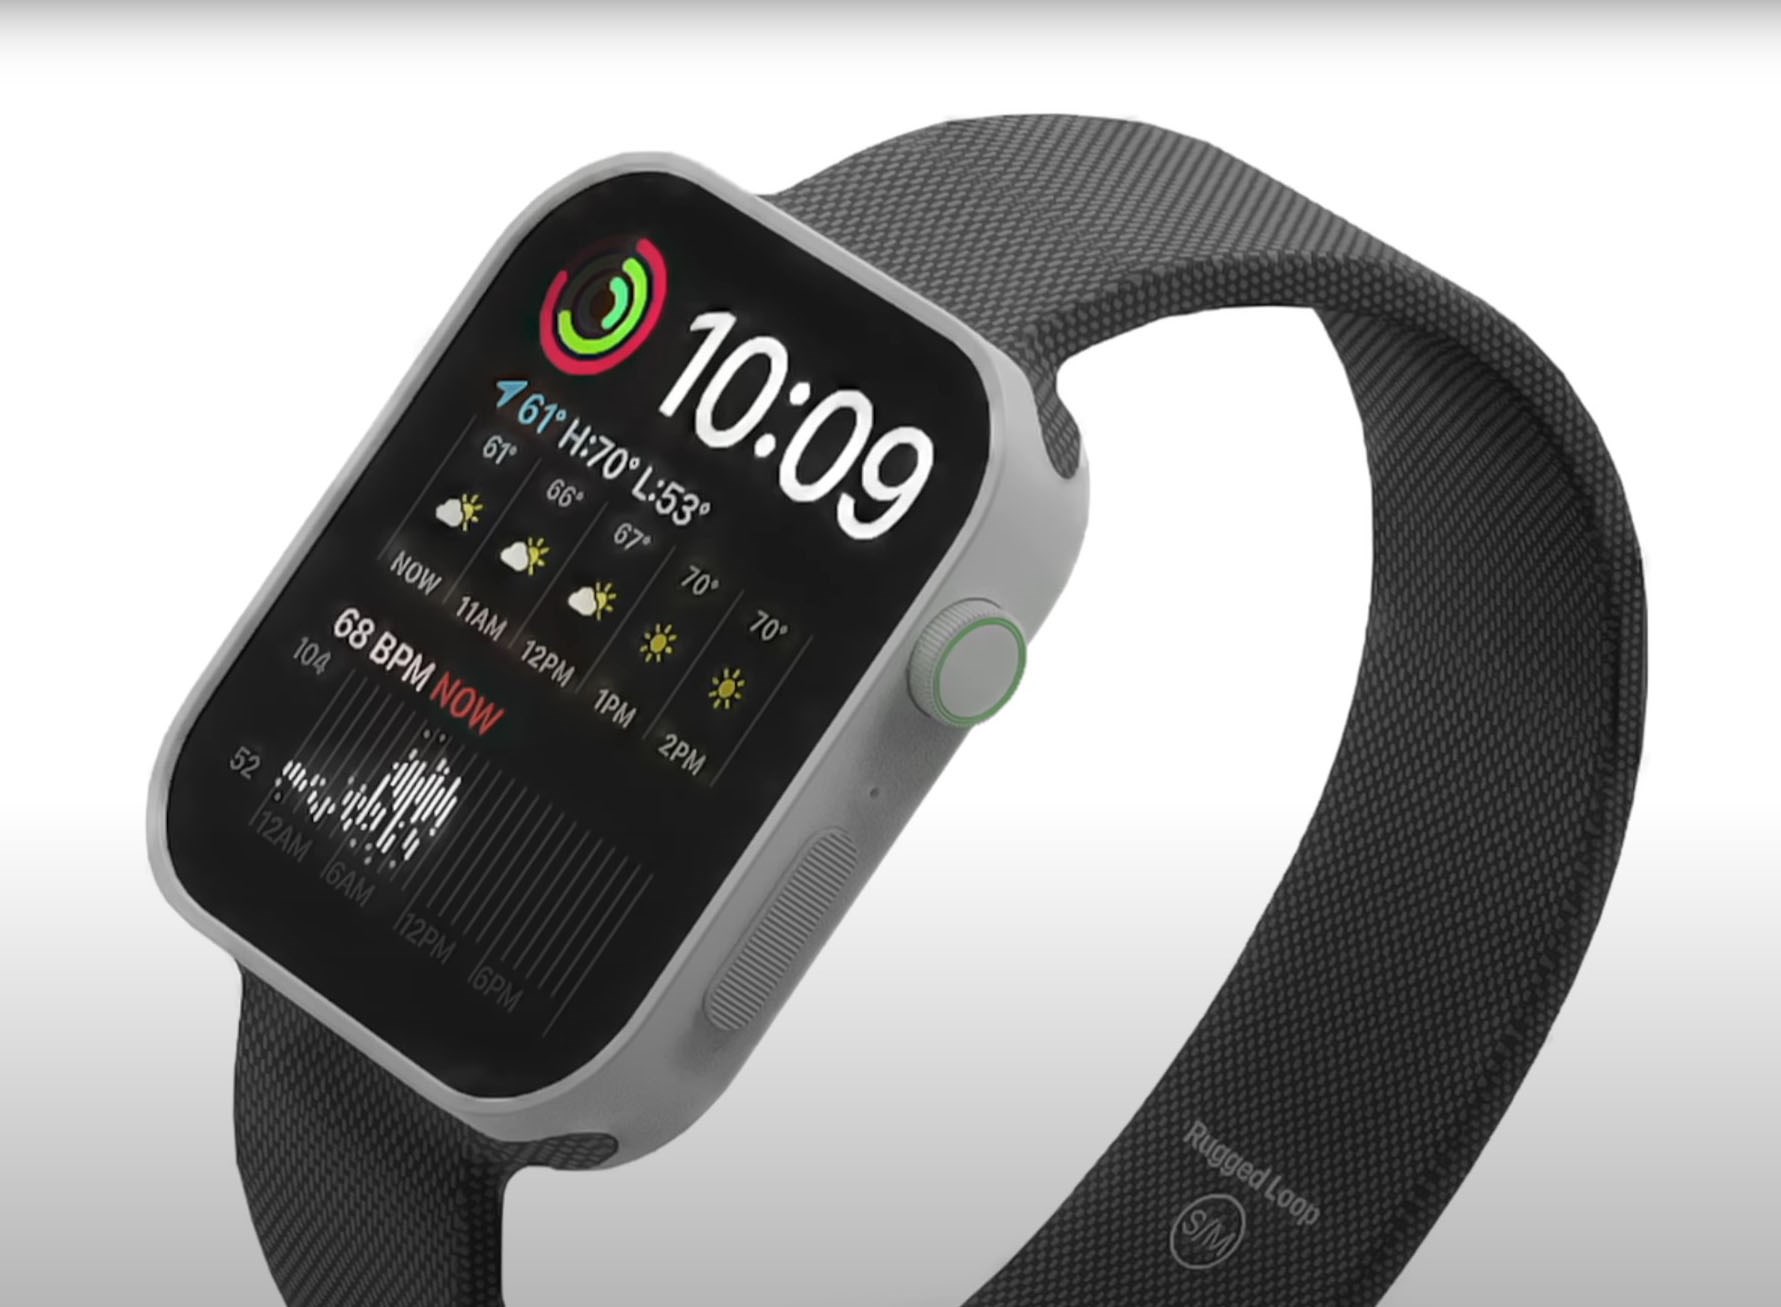 Apple Watch Pro cep yakacak: Fiyatı 1.000 doları bulabilir